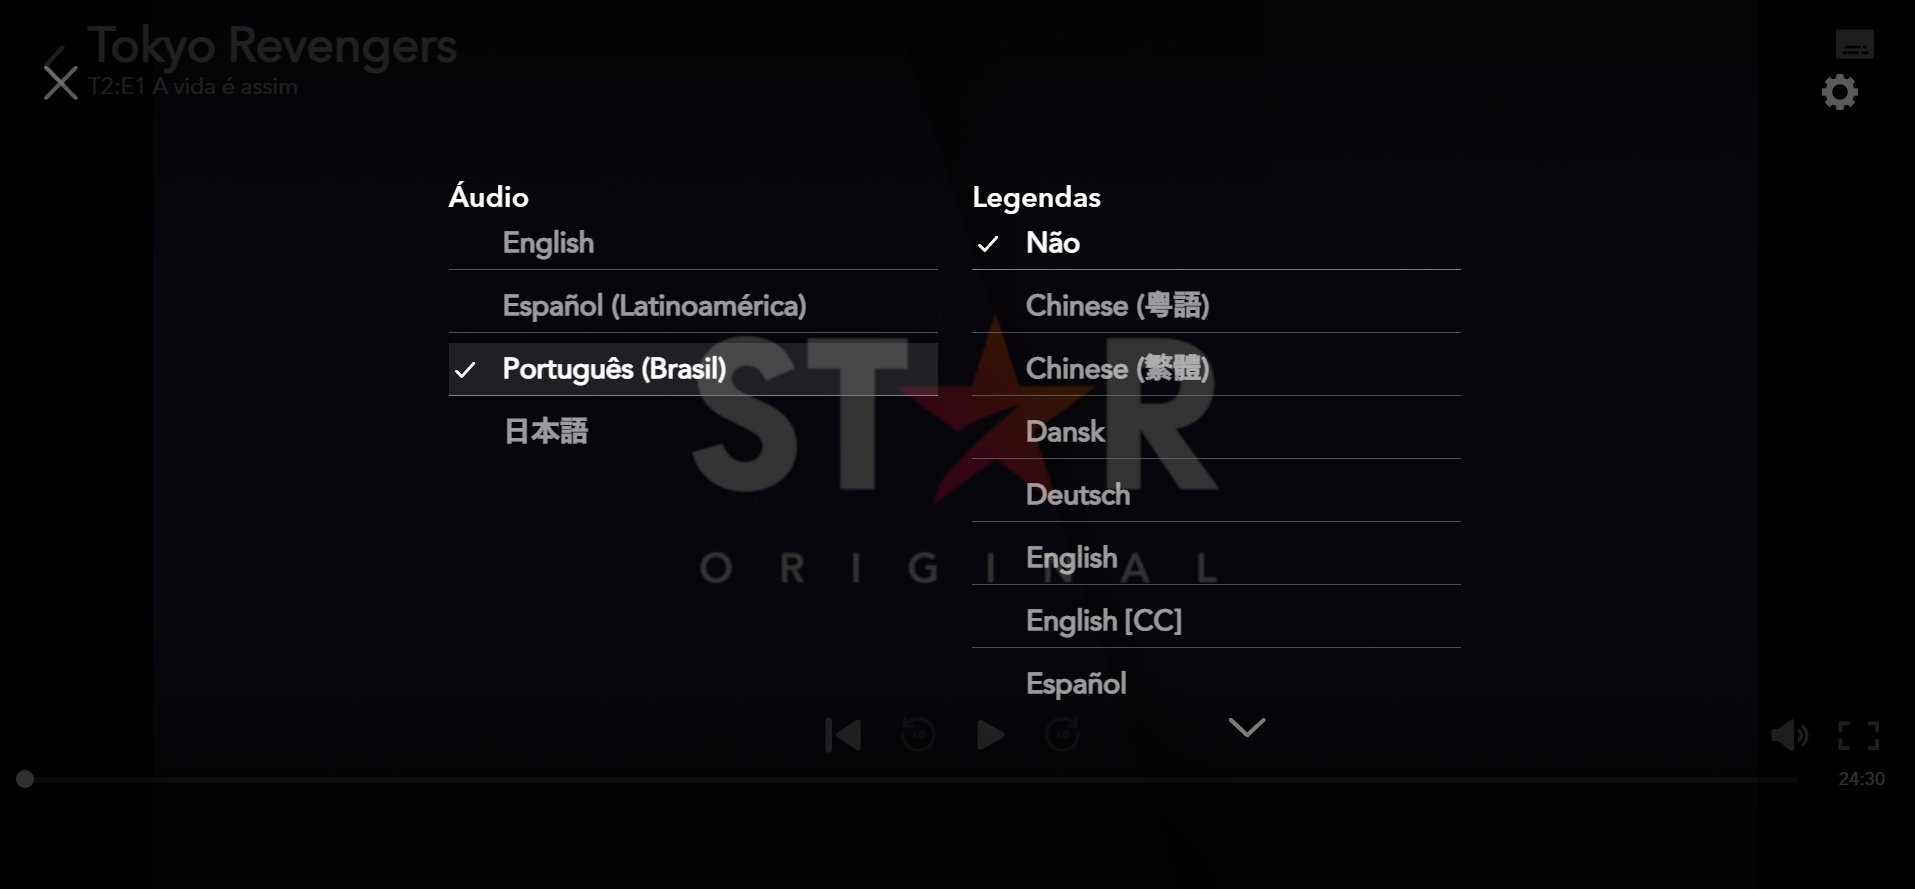 Otakus Brasil 🍥 on X: A dublagem do 1º episódio da 2ª temporada de Tokyo  Revengers já está disponível no Star+.  / X